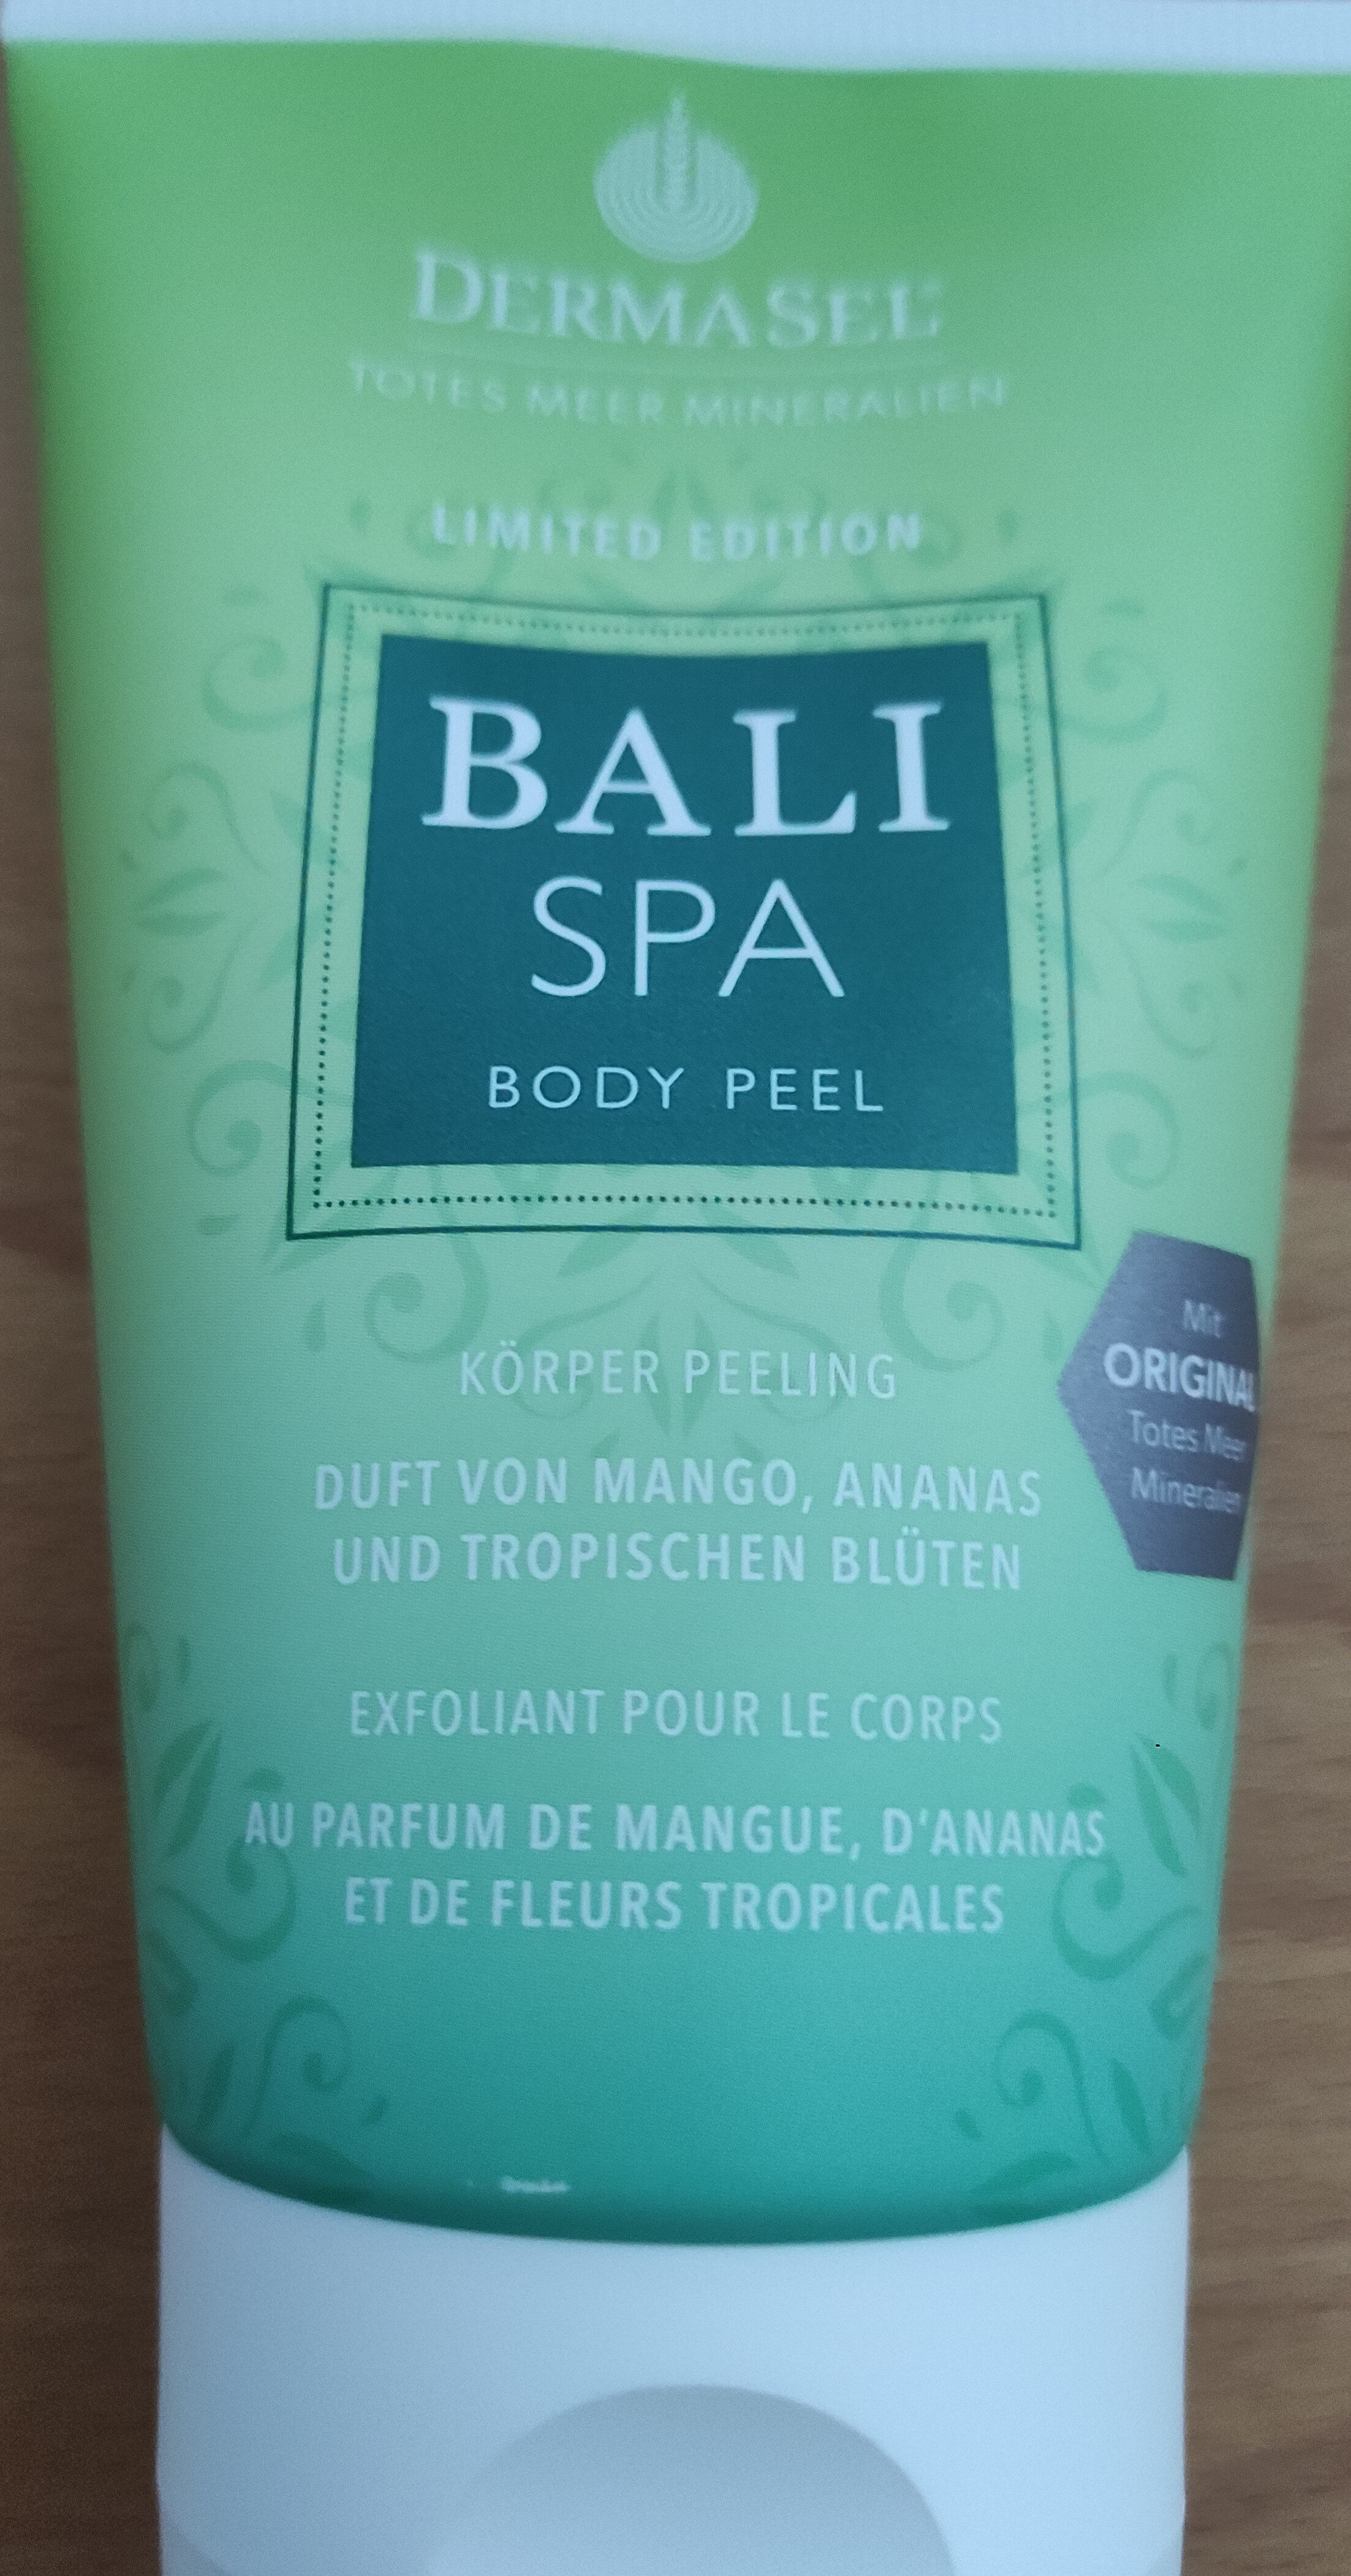 Dermasel Bali Spa Body Peel Körper Peeling - Produit - de